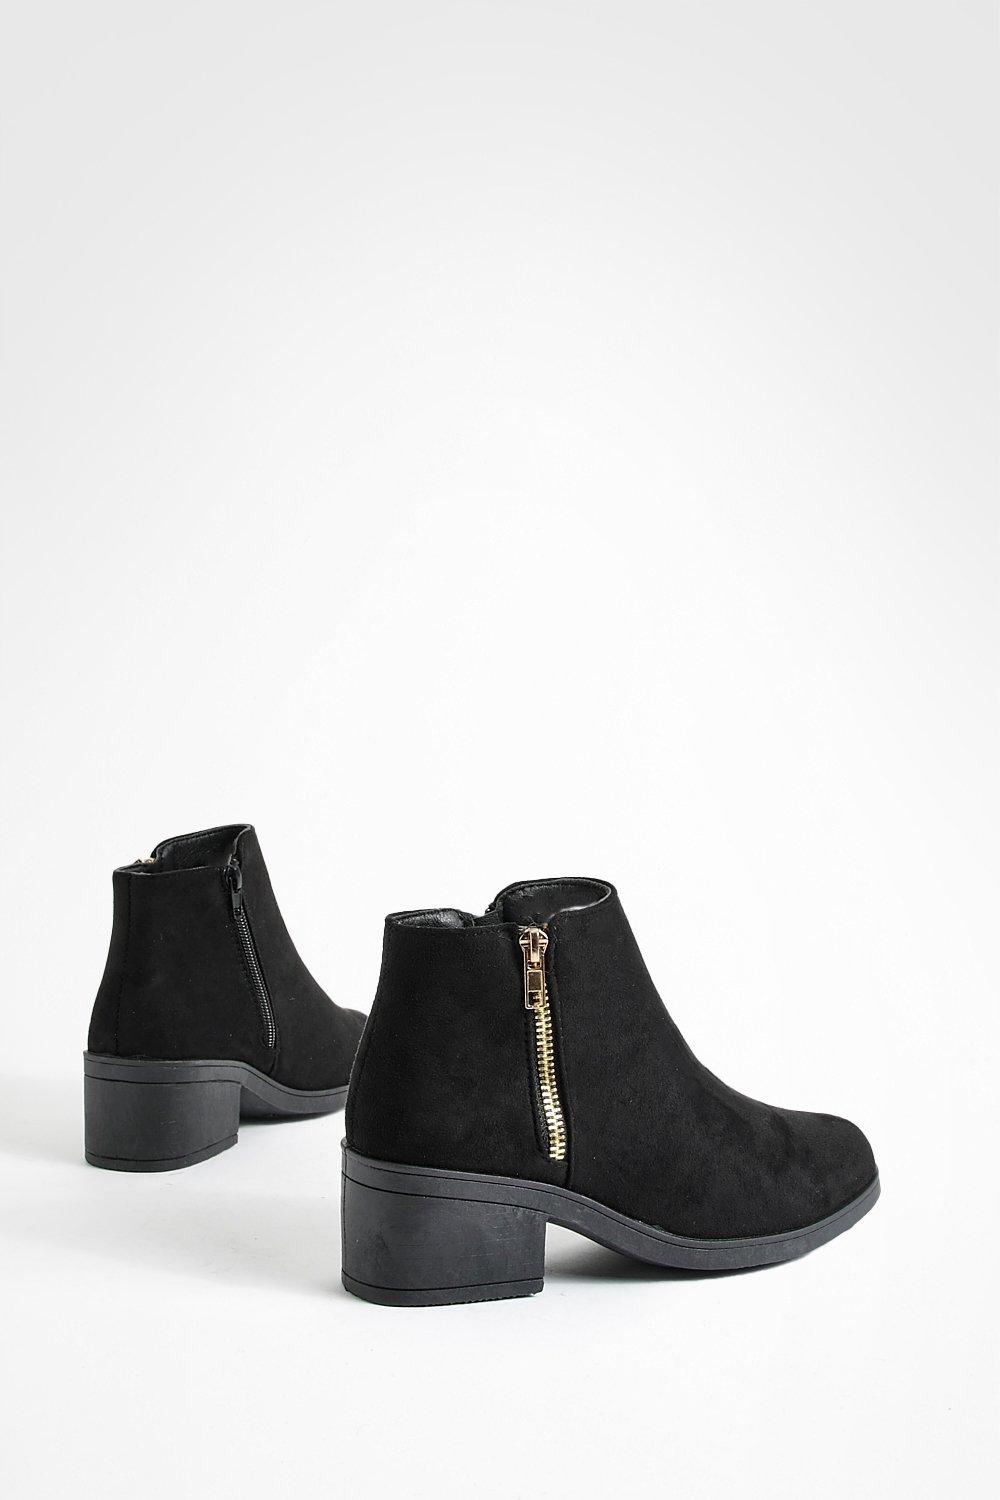 Boohoo Side Zip Low Block Heel Boots - Black - Size 7